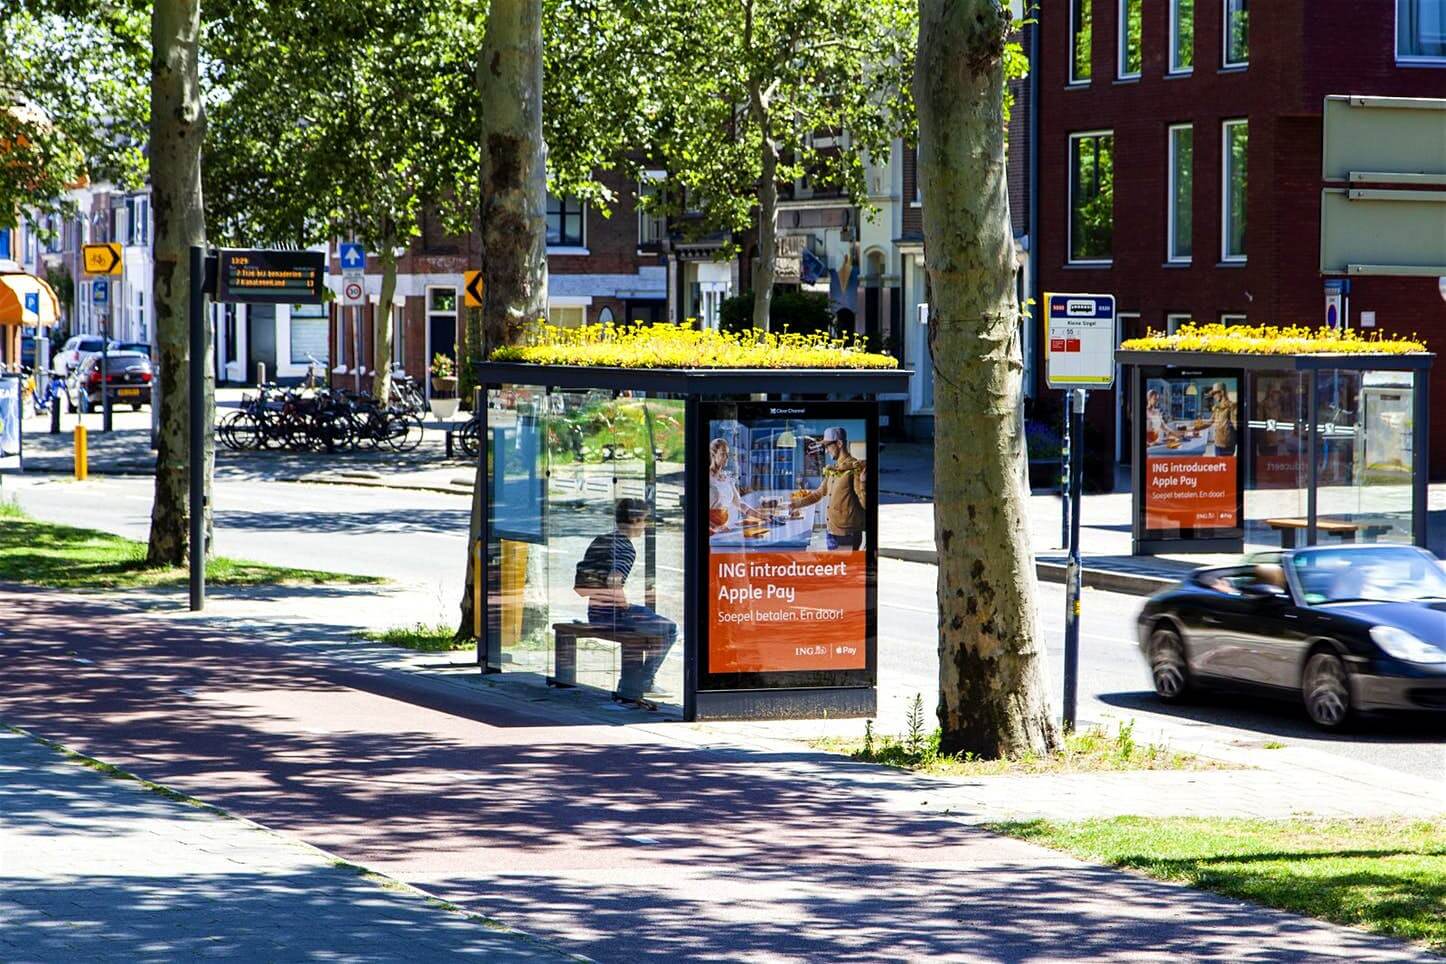 Hà Lan - đất nước với cảnh quan tuyệt đẹp và văn hóa lâu đời. Dừng chân tại trạm dừng xe buýt công cộng để khoe sắc màu mái nhà xanh tươi trẻ, cùng chiêm ngưỡng những đàn ong bận rộn thu nectar hoa trên đồng cỏ xanh rực rỡ.